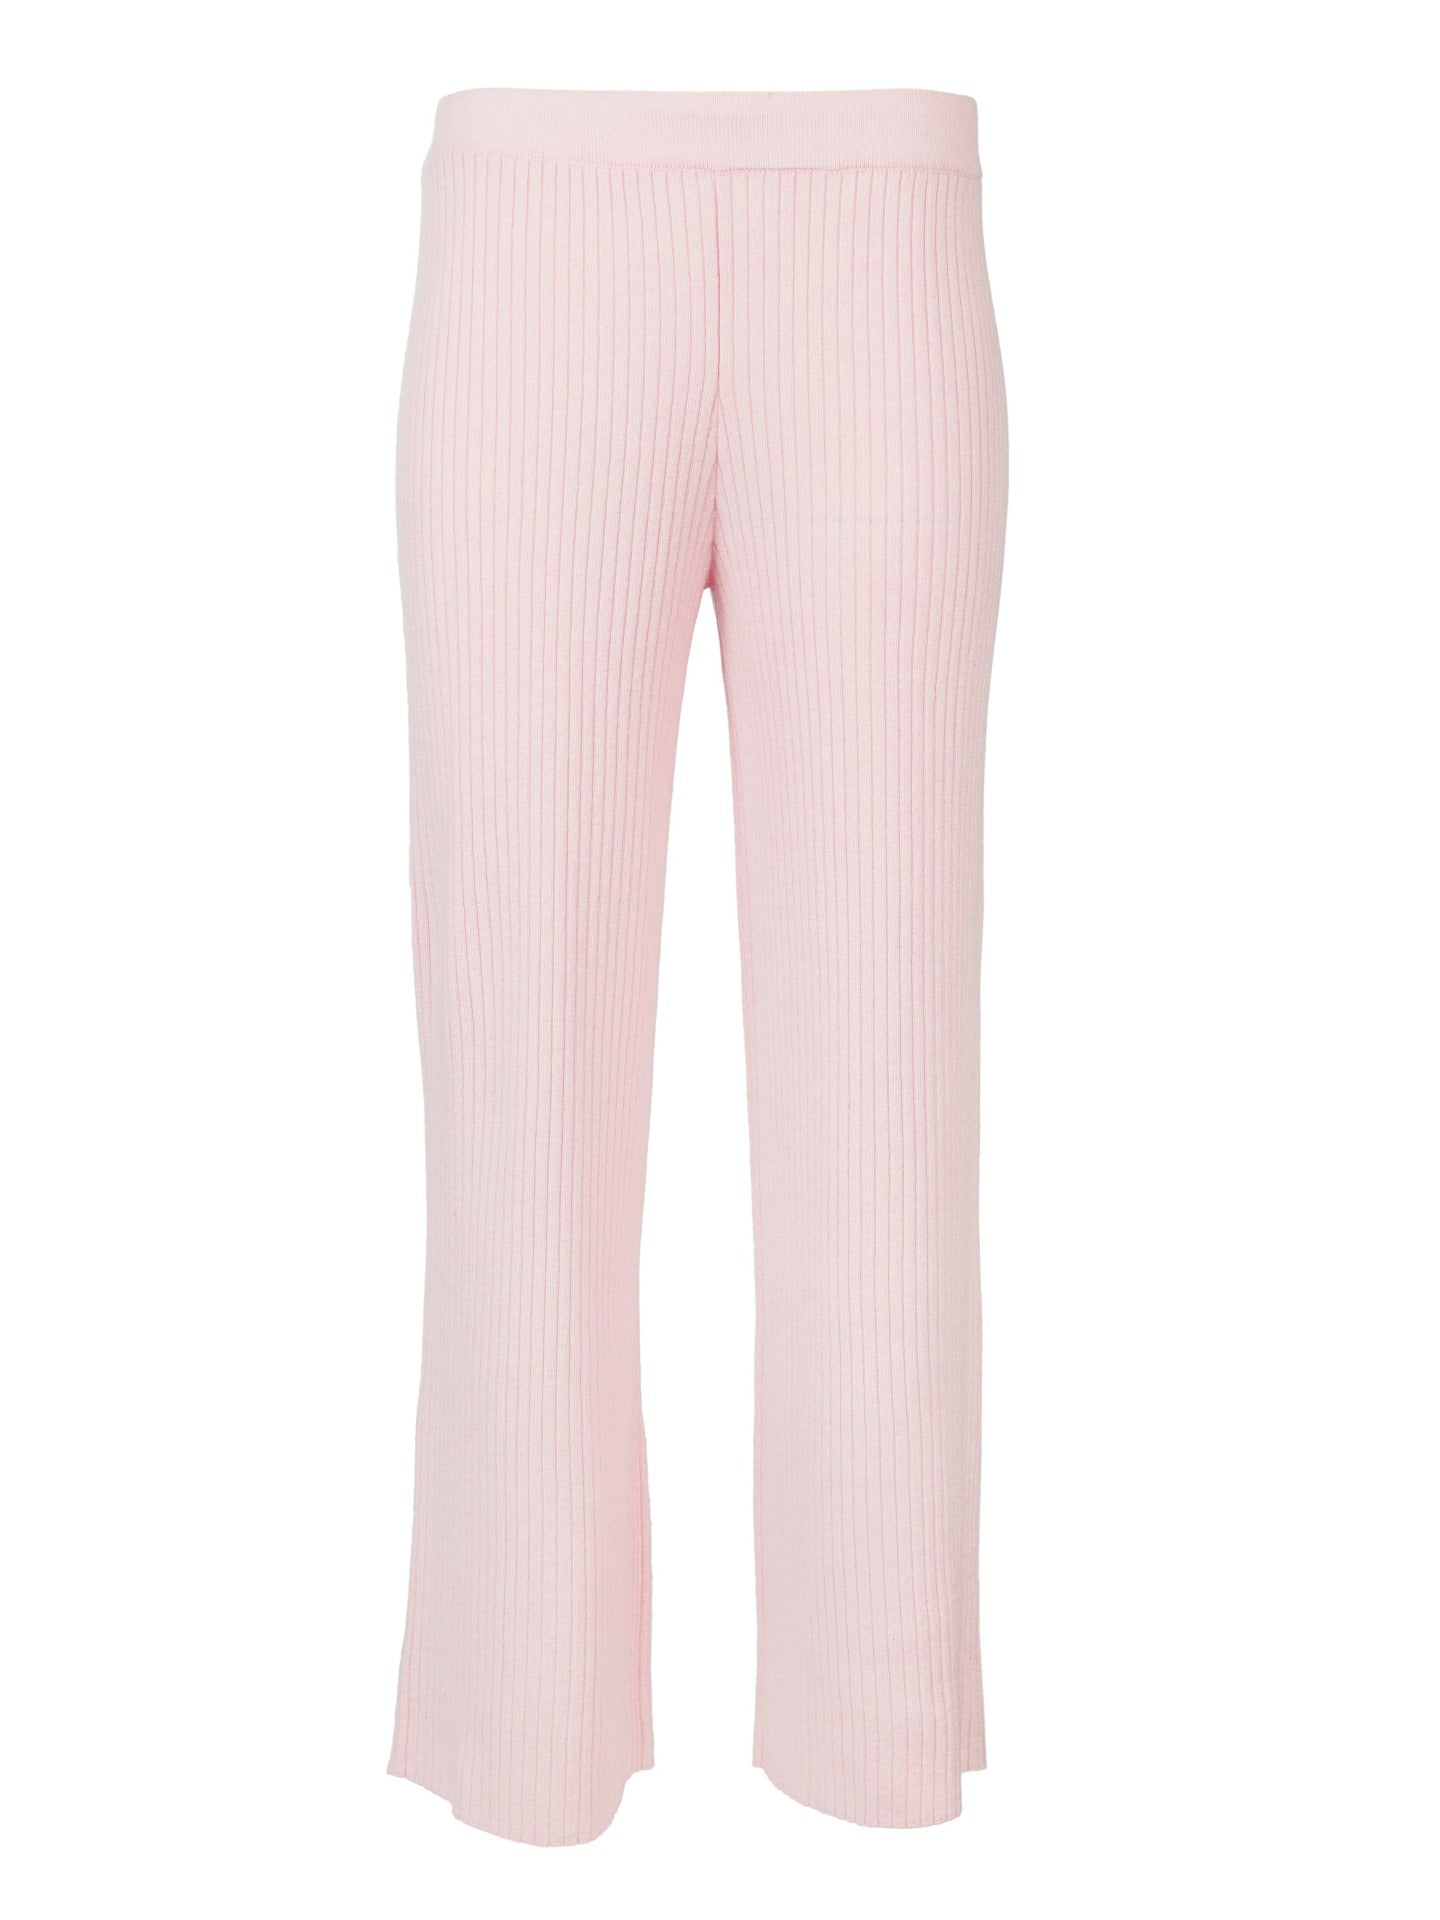 Pantalon en cachemire pour femme rose ivoire - Gobi Cashmere